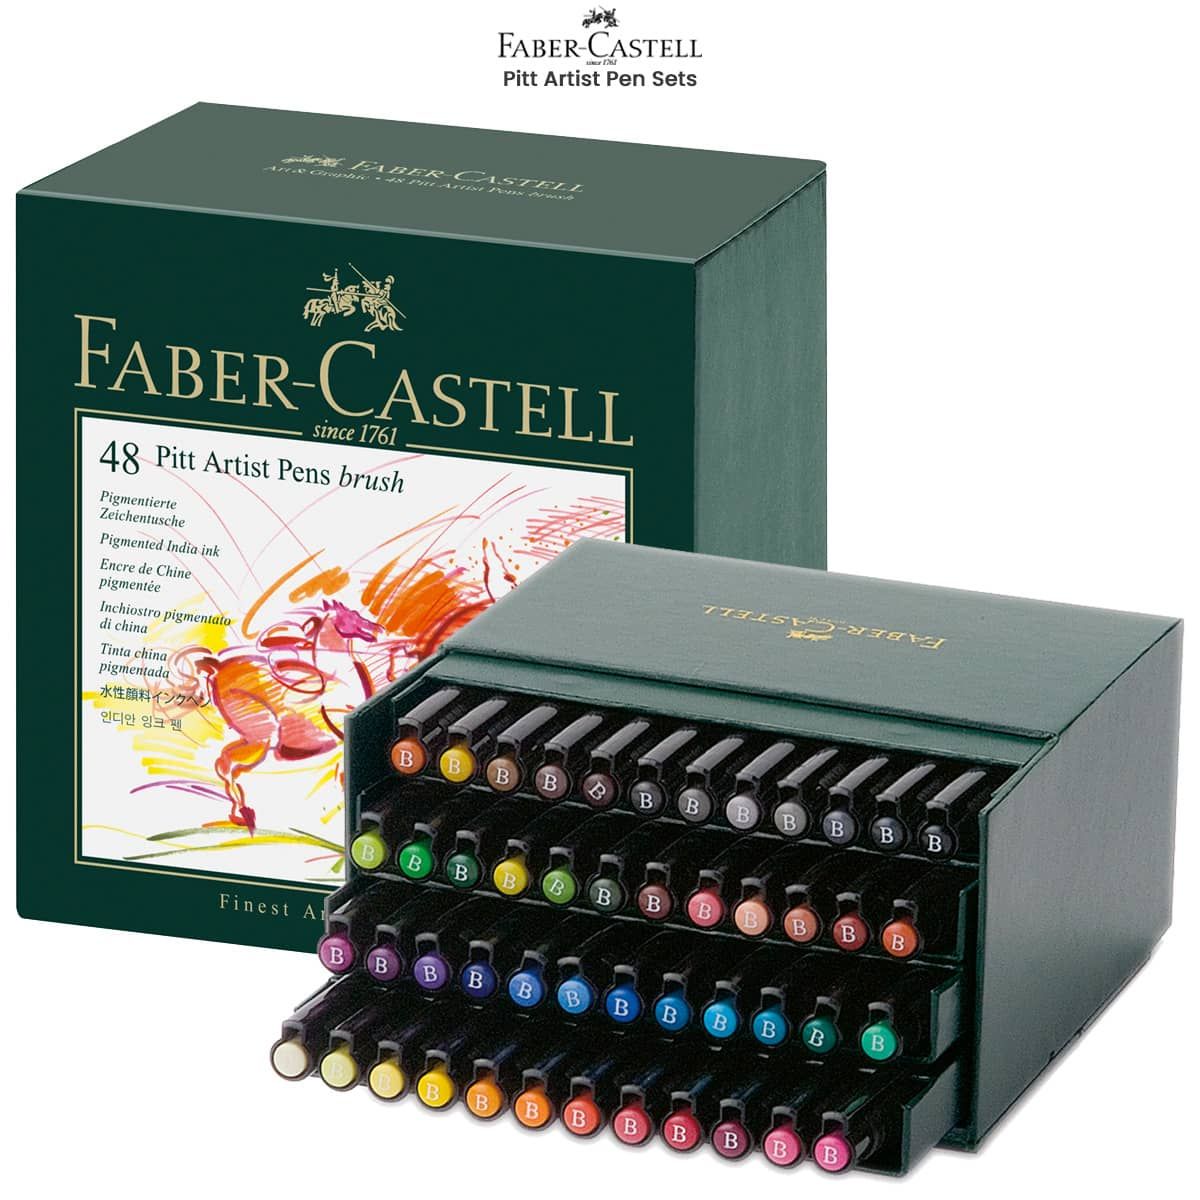 Faber-Castell PITT Artist Pen Sets - Encre noire en plumes